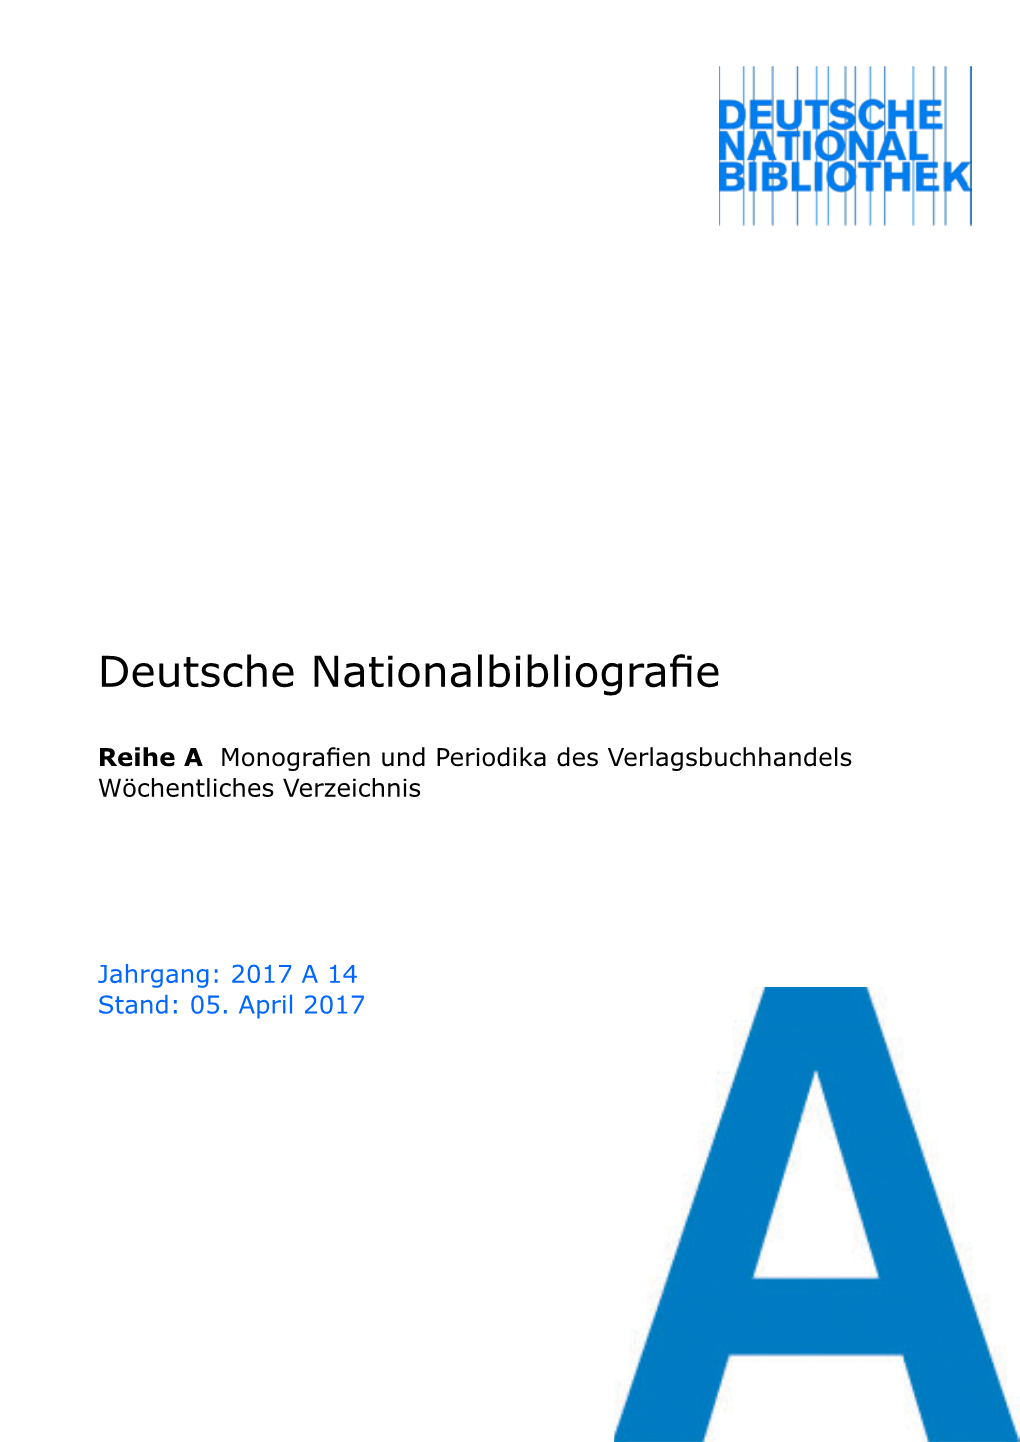 Deutsche Nationalbibliografie 2017 a 14